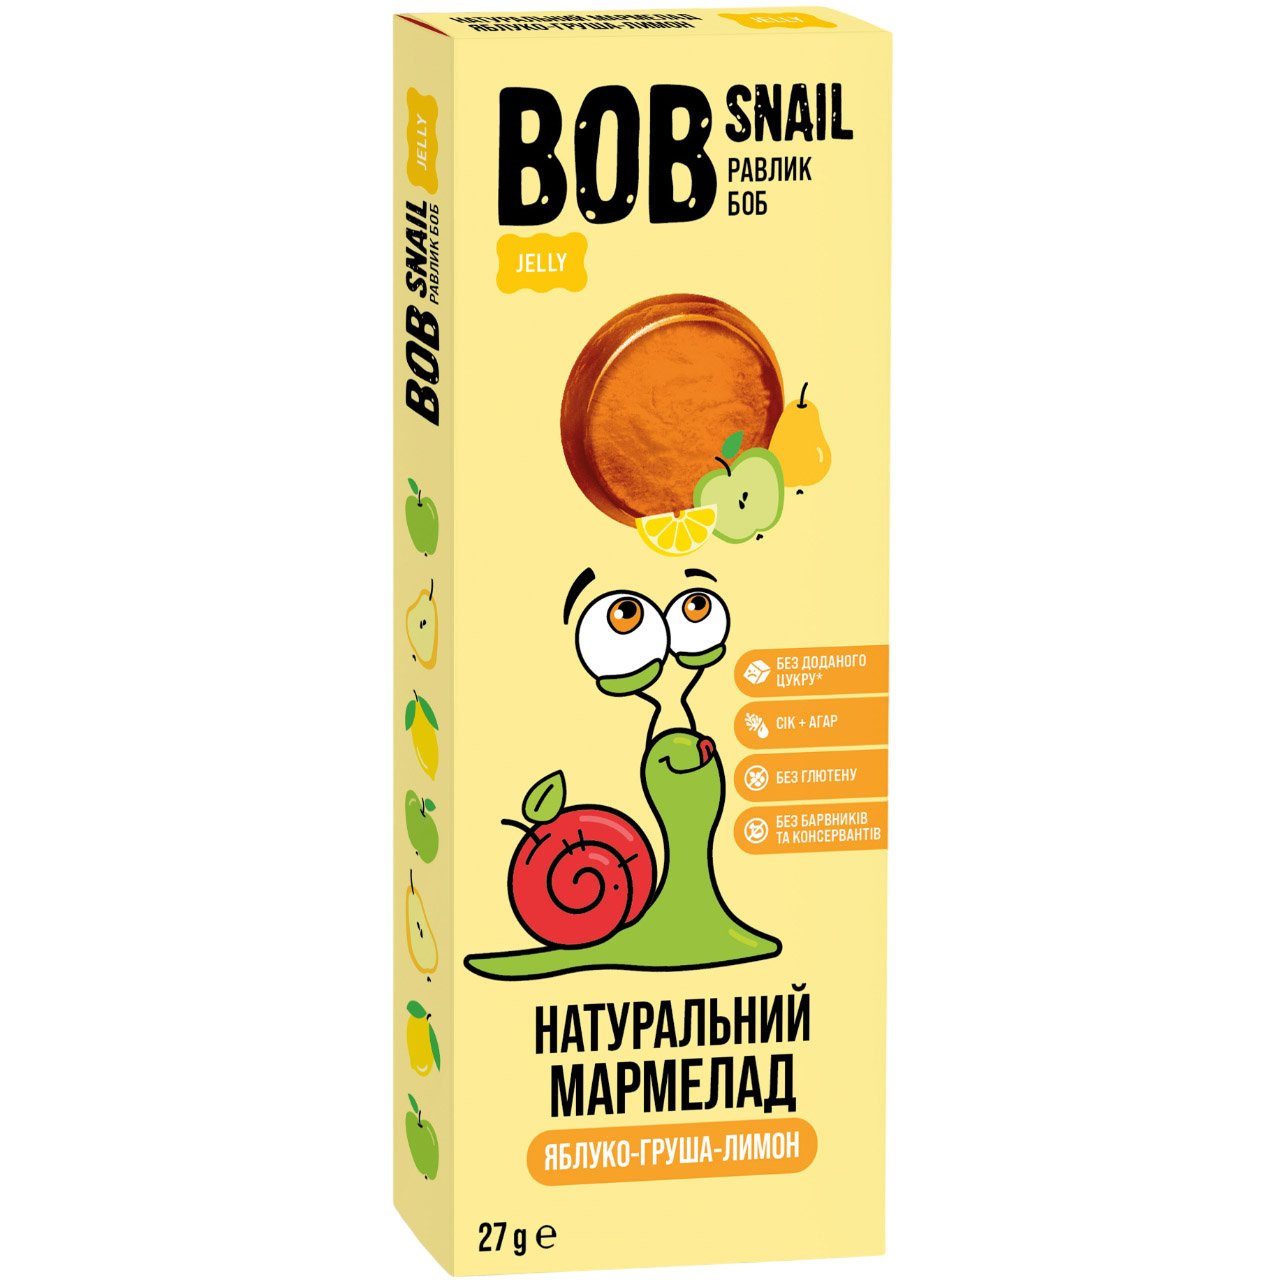 Натуральний мармелад Bob Snail Яблуко-Груша-Лимон 27 г - фото 1